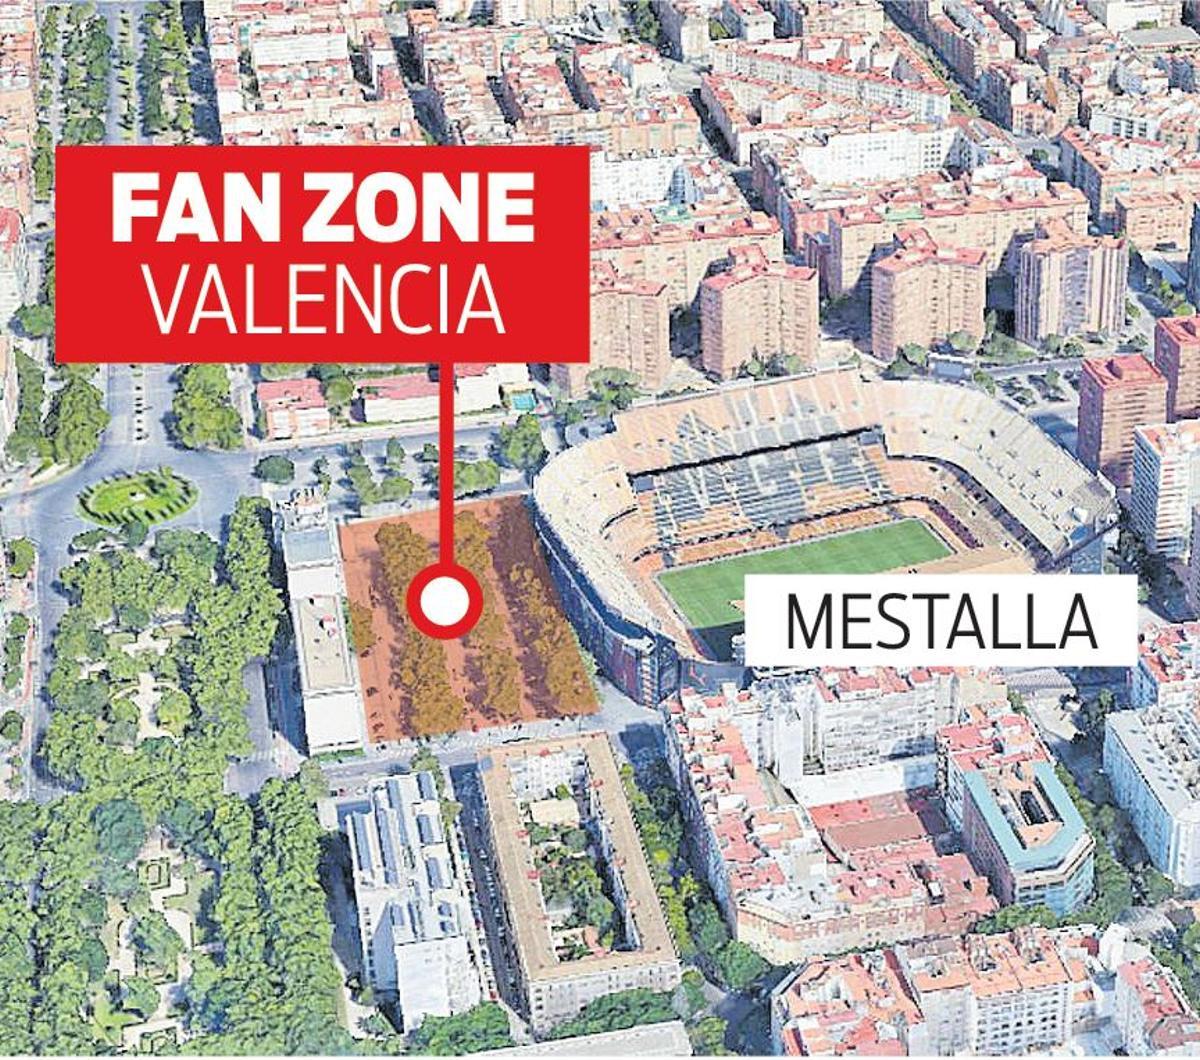 Esta será la ubicación de la Fan Zone de Mestalla